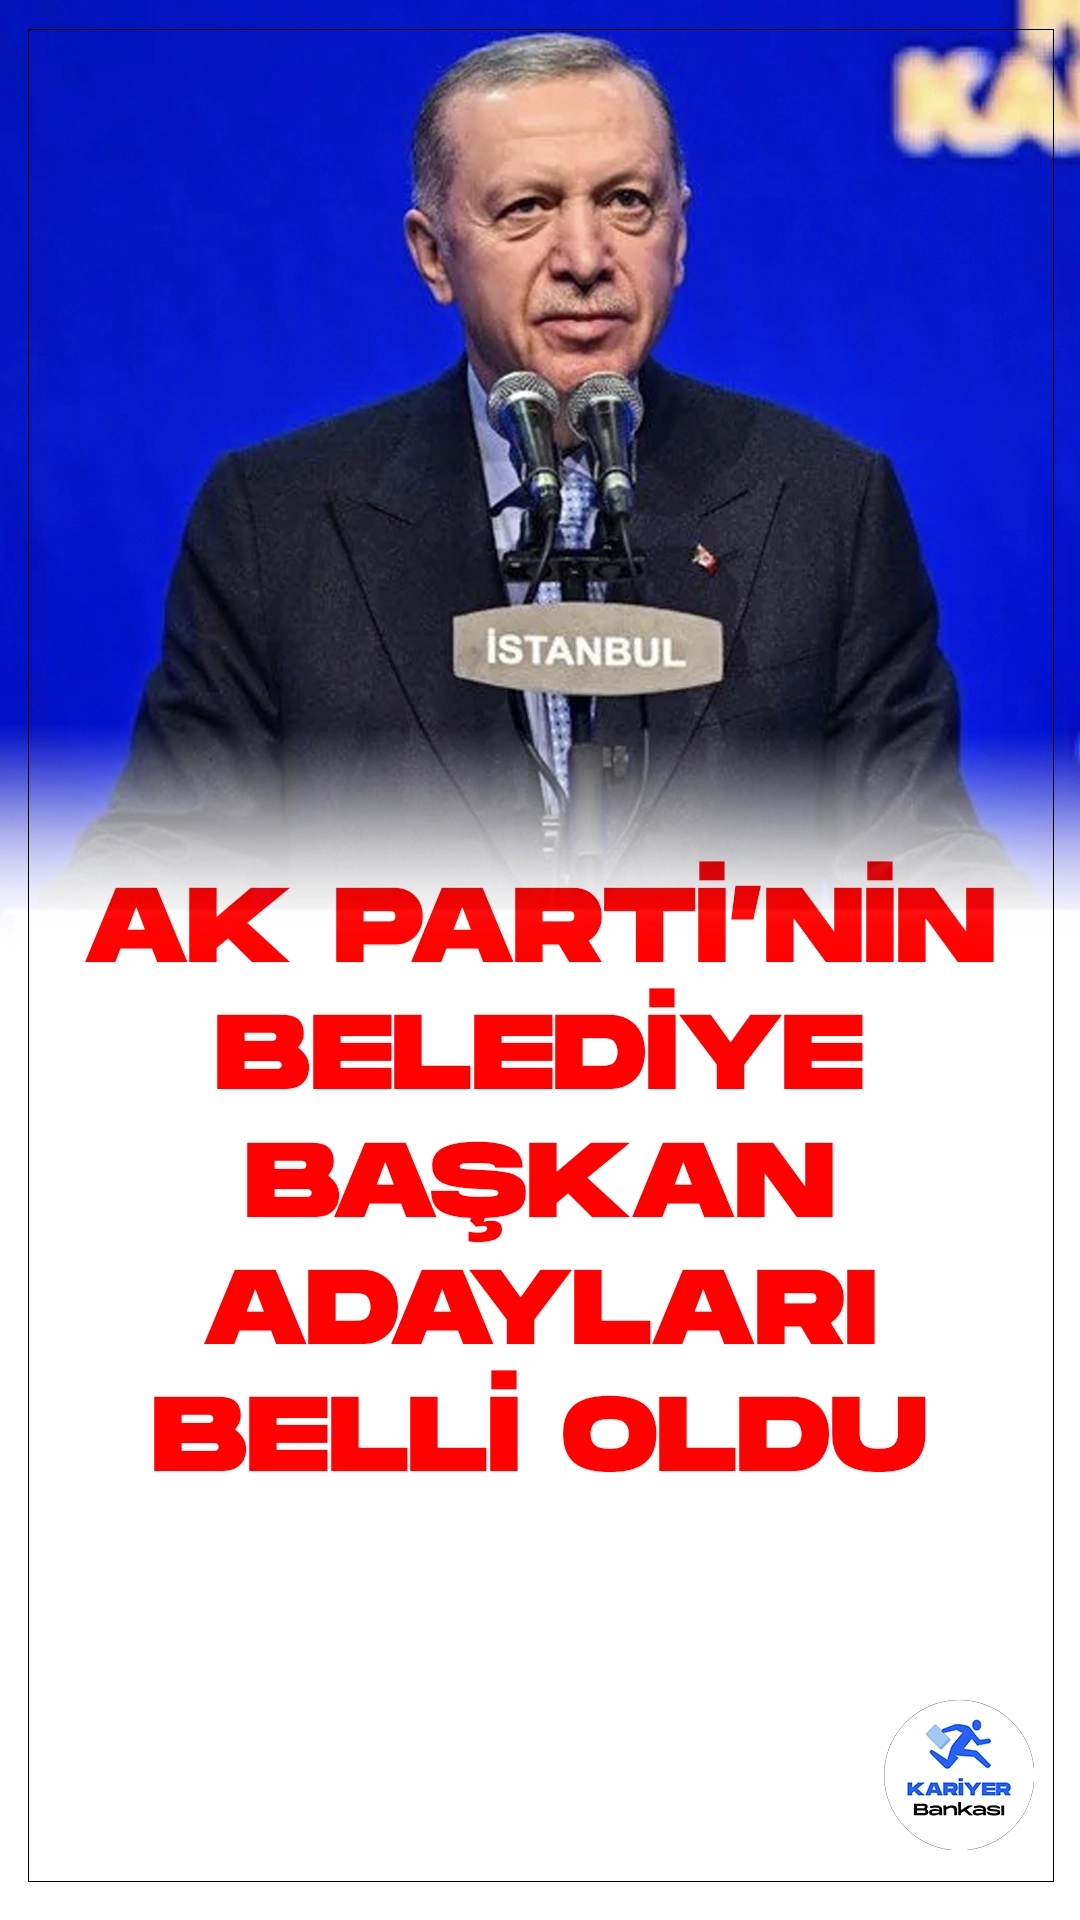 AK Parti'nin Belediye Başkan Adayları Belli Oldu.Cumhurbaşkanı Recep Tayyip Erdoğan, Haliç Kongre Merkezi'nde düzenlenen AK Parti Aday Tanıtım Toplantısı'nda, 26 ilin adaylarını duyurdu. Erdoğan'ın önemli açıklamaları arasında öne çıkanlar şu şekilde: